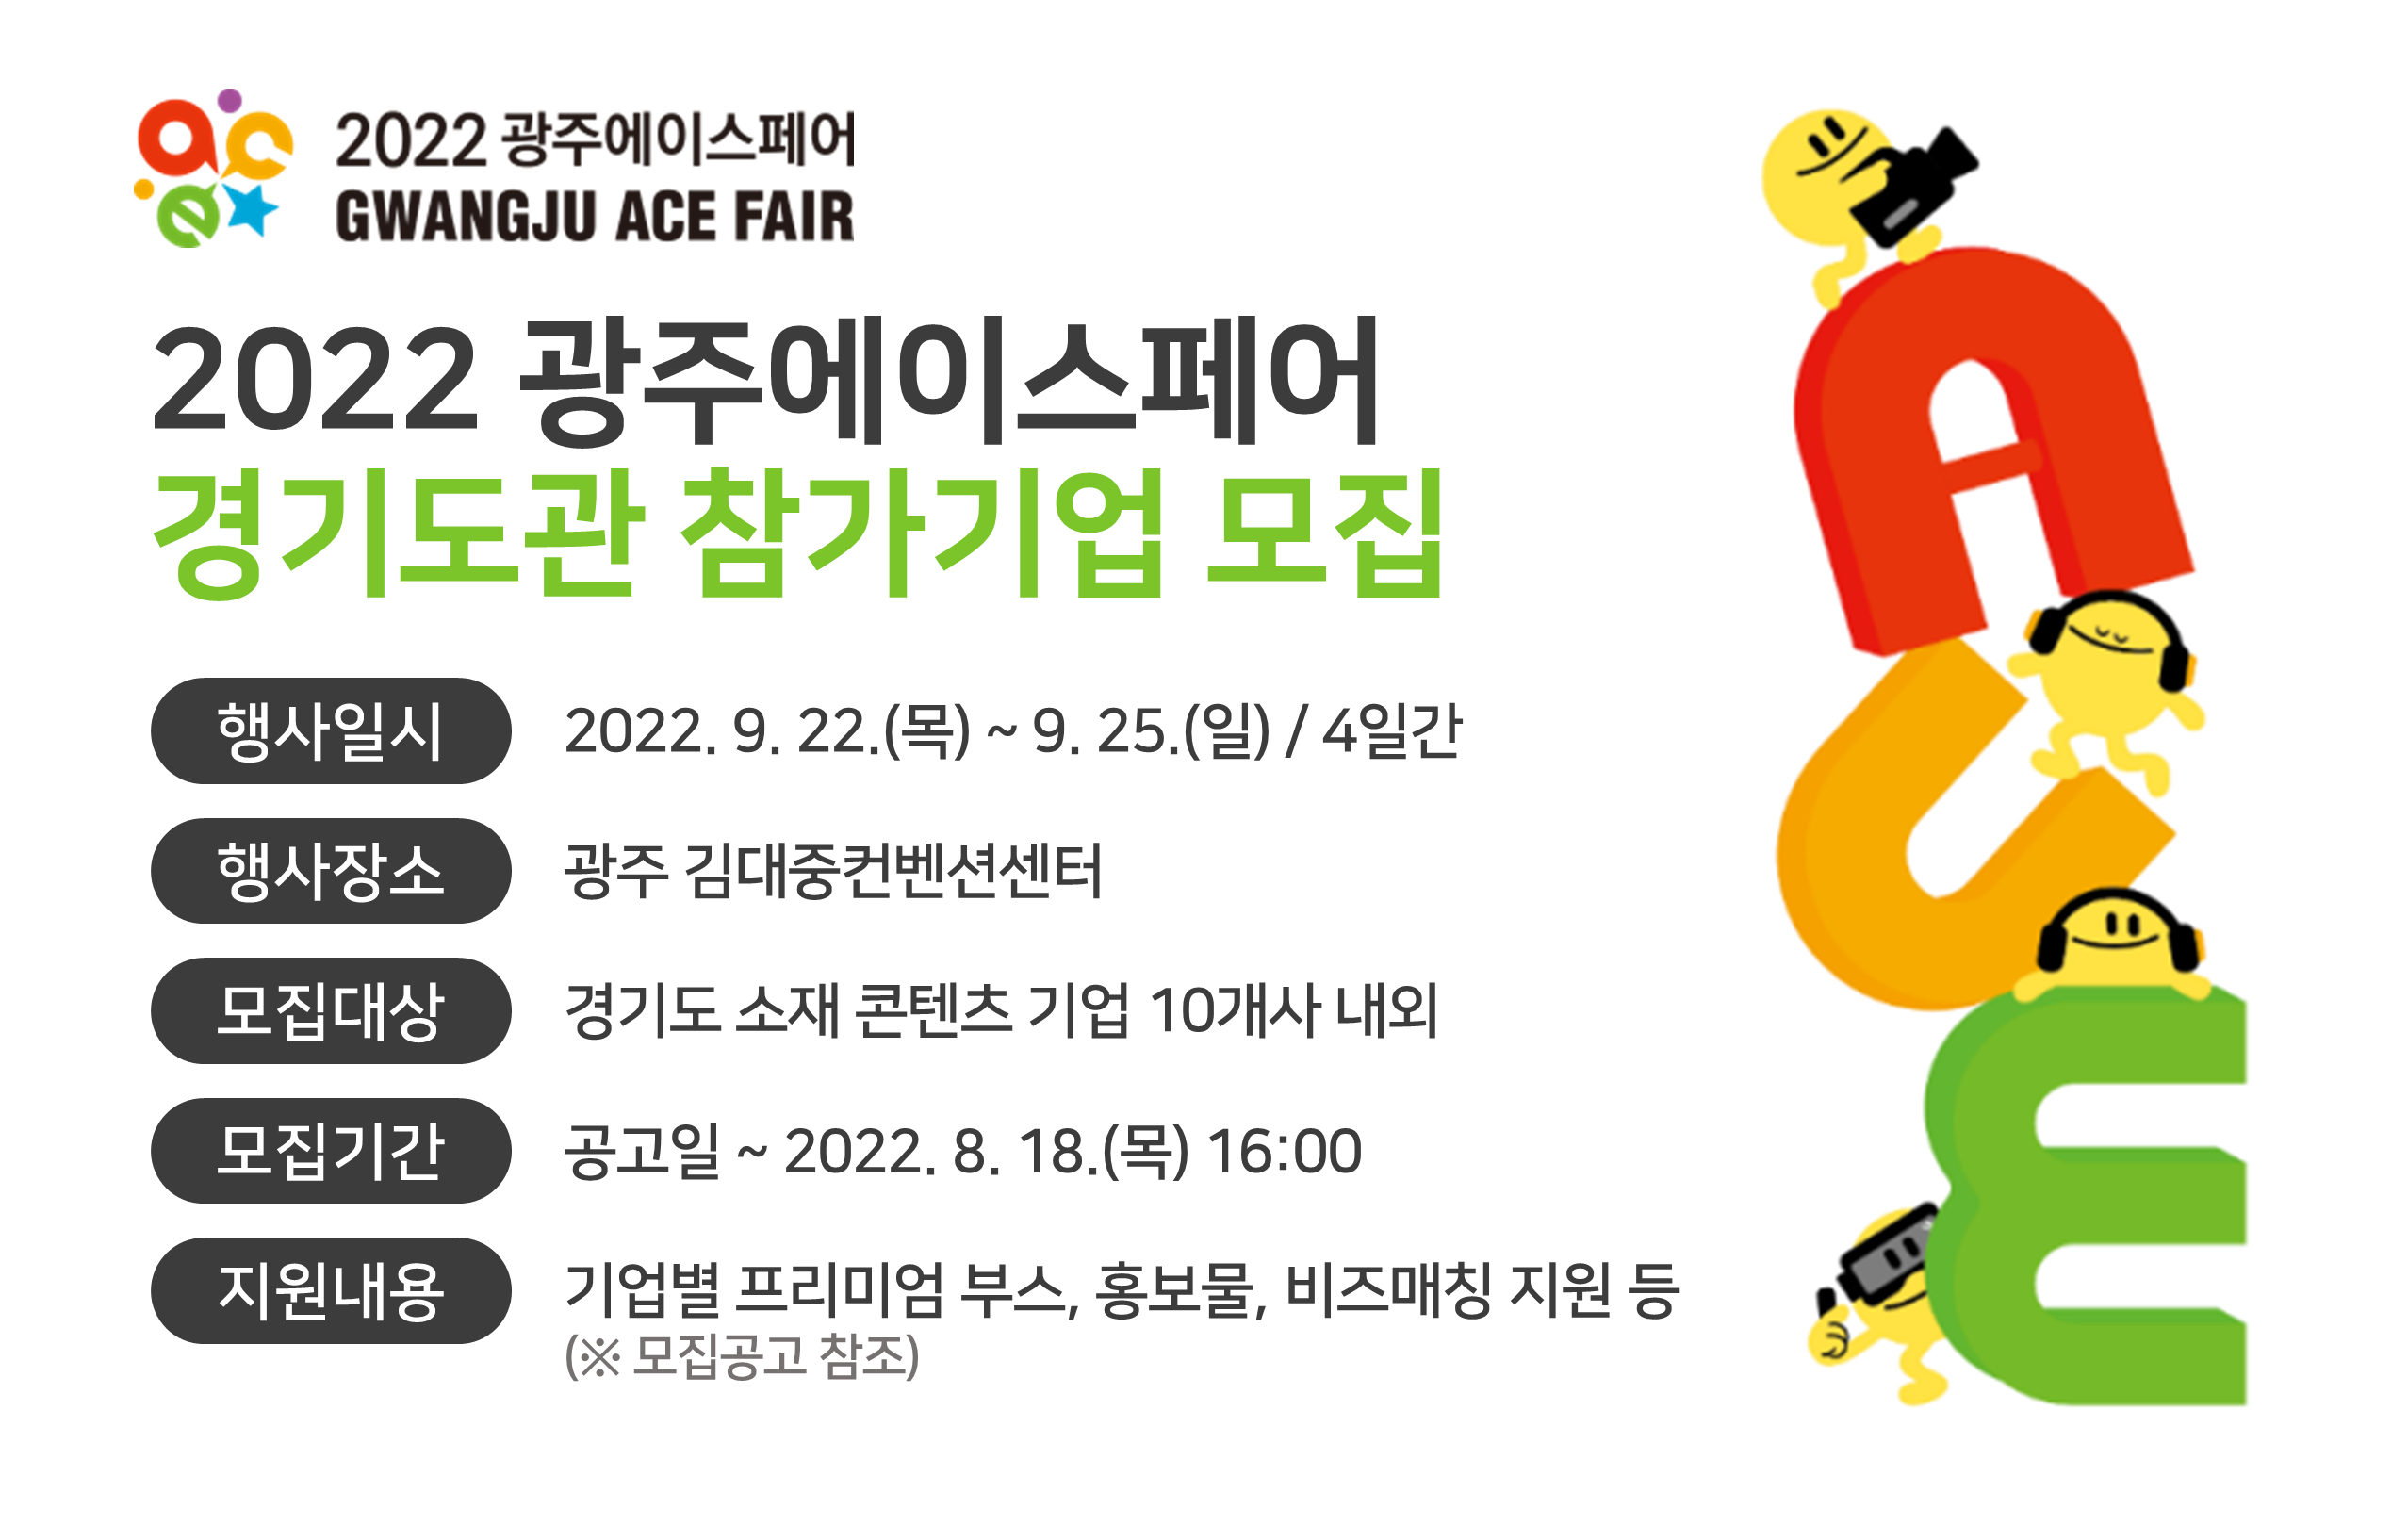 2022 광주에이스페어 경기도관 참가기업 모집